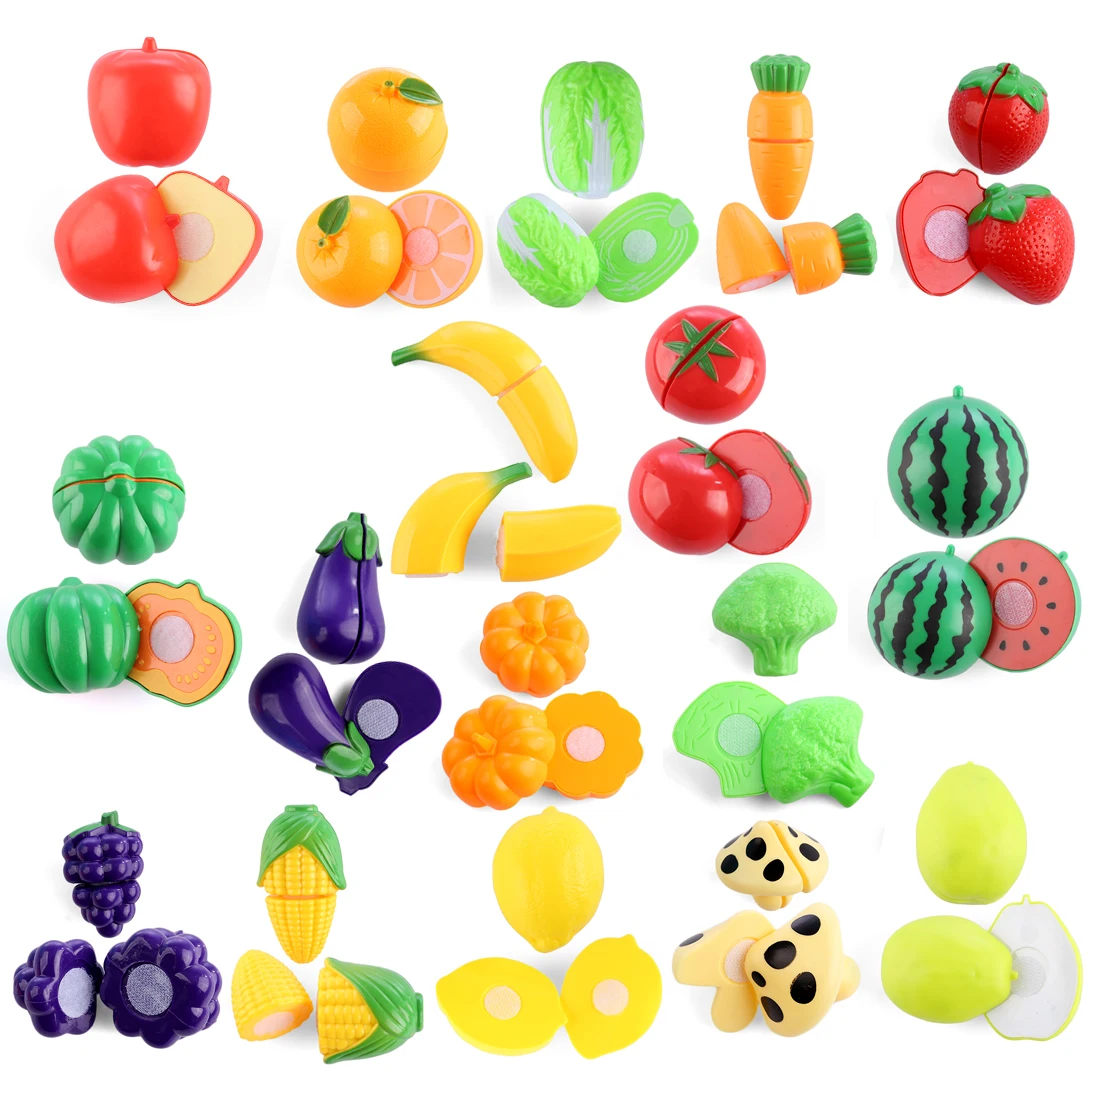 29 шт. детская кухня игрушечные лошадки резка фрукты овощи пластик ролевые игры раннего развития Образование игрушка для детей рождеств